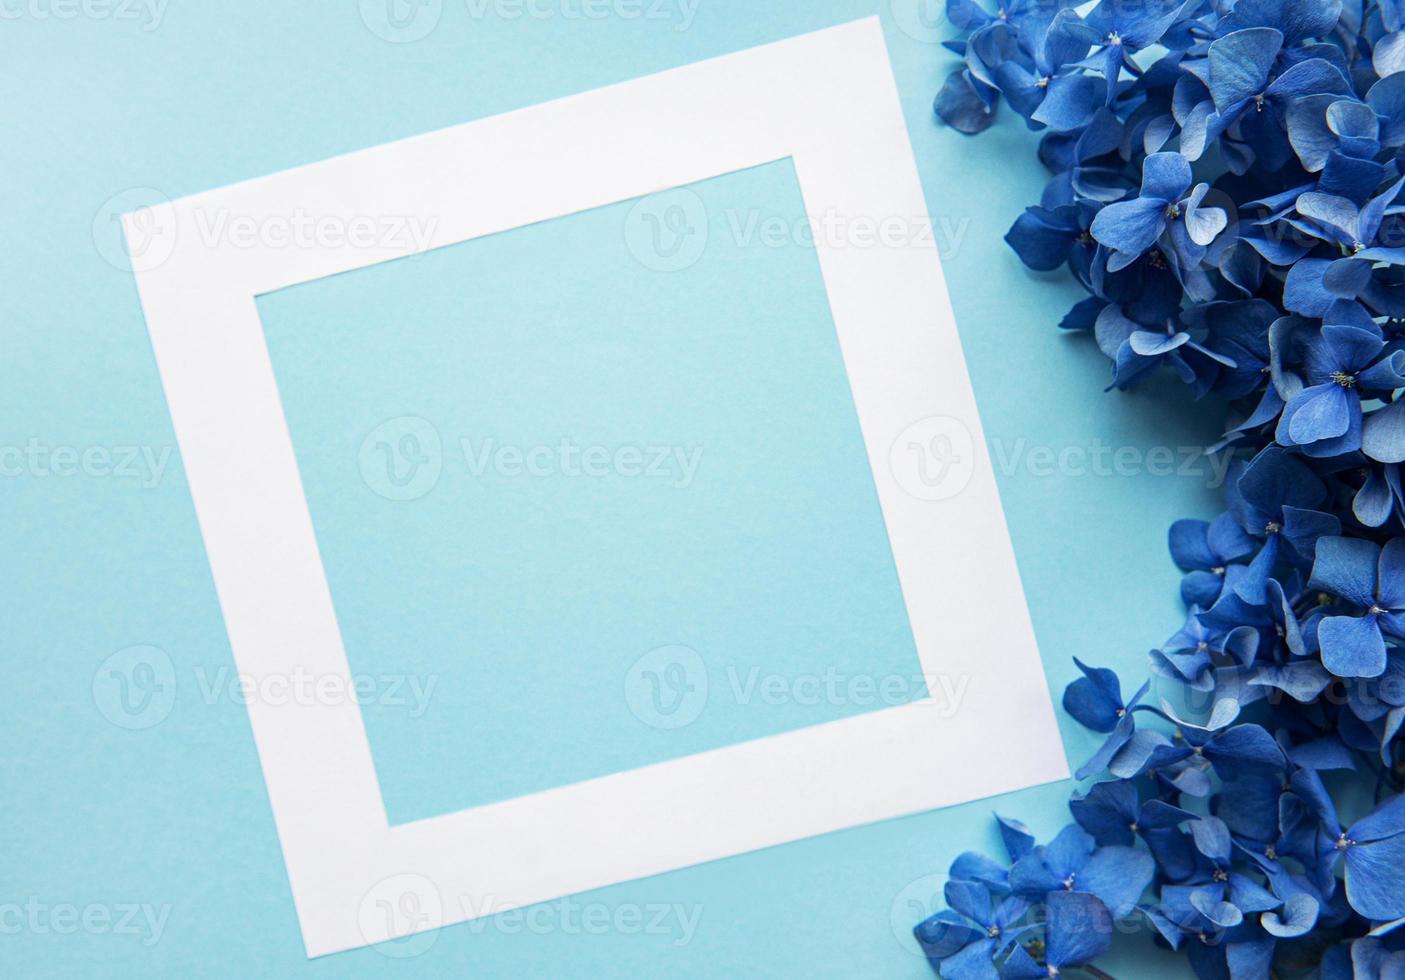 weißer Rahmen und blaue Hortensienblüten foto